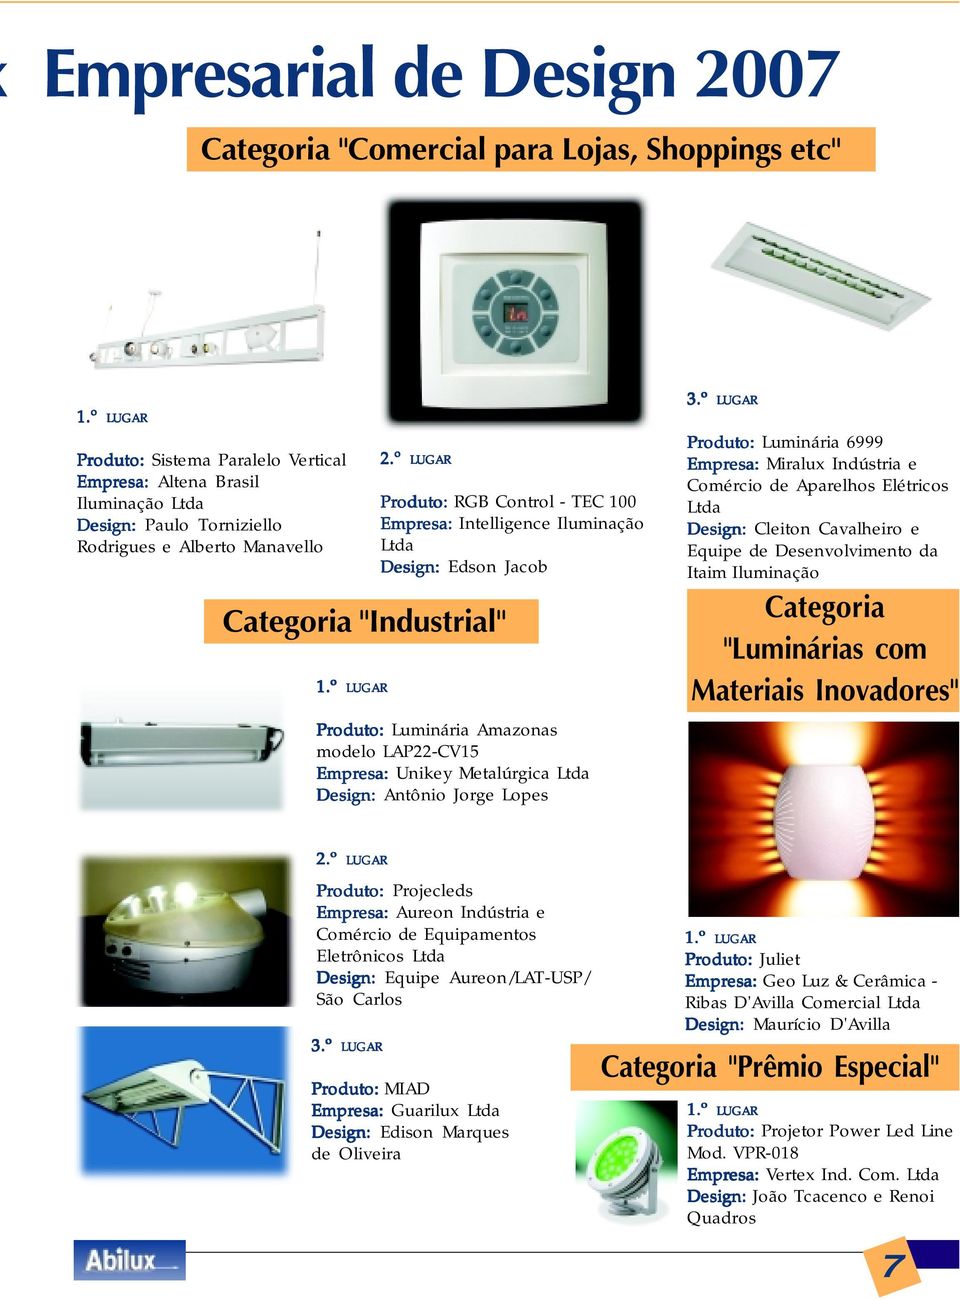 LUGAR Produto: Luminária 6999 Empresa: Miralux Indústria e Comércio de Aparelhos Elétricos Design: Cleiton Cavalheiro e Equipe de Desenvolvimento da Itaim Iluminação "Luminárias com Materiais